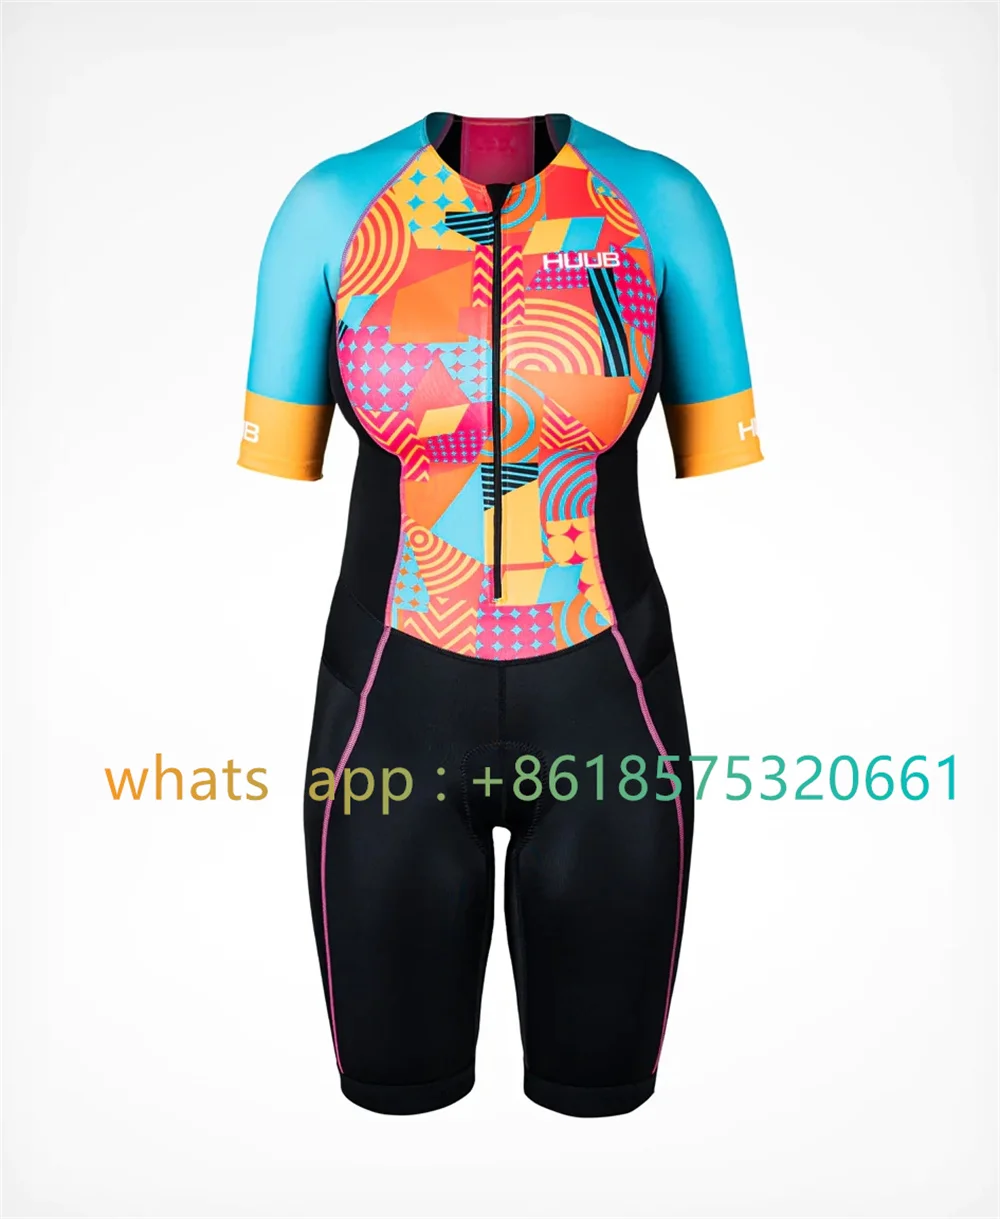 

Женский костюм для триатлона Huub Tri, летний костюм для езды на велосипеде и триатлона с коротким рукавом, костюм для команды, трико для езды на велосипеде